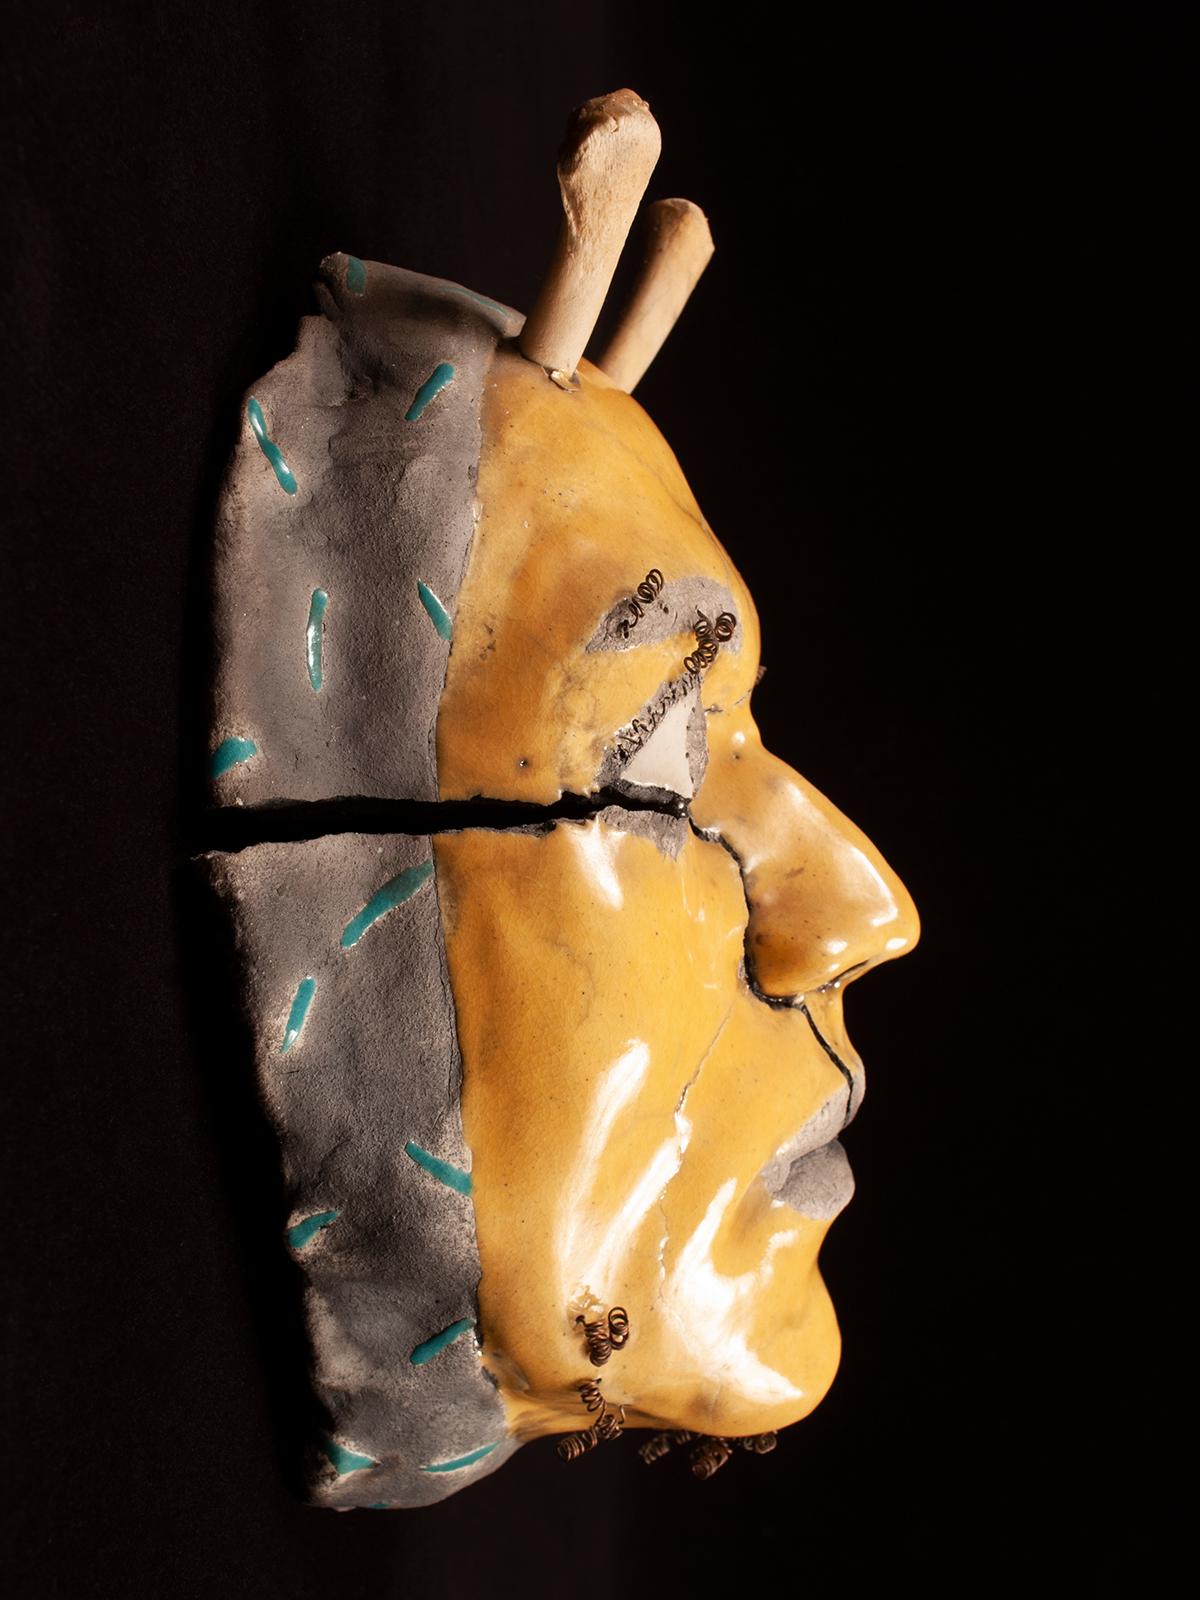 Zeitgenössische Raku-Keramikmaske mit Geweih von Argon

Eine im Raku-Verfahren gebrannte Keramikmaske des Künstlers Argon, erworben in den 1980er Jahren in der Galleria de la Raza in San Francisco. Der Gesichtsausdruck ist ein Ausdruck des